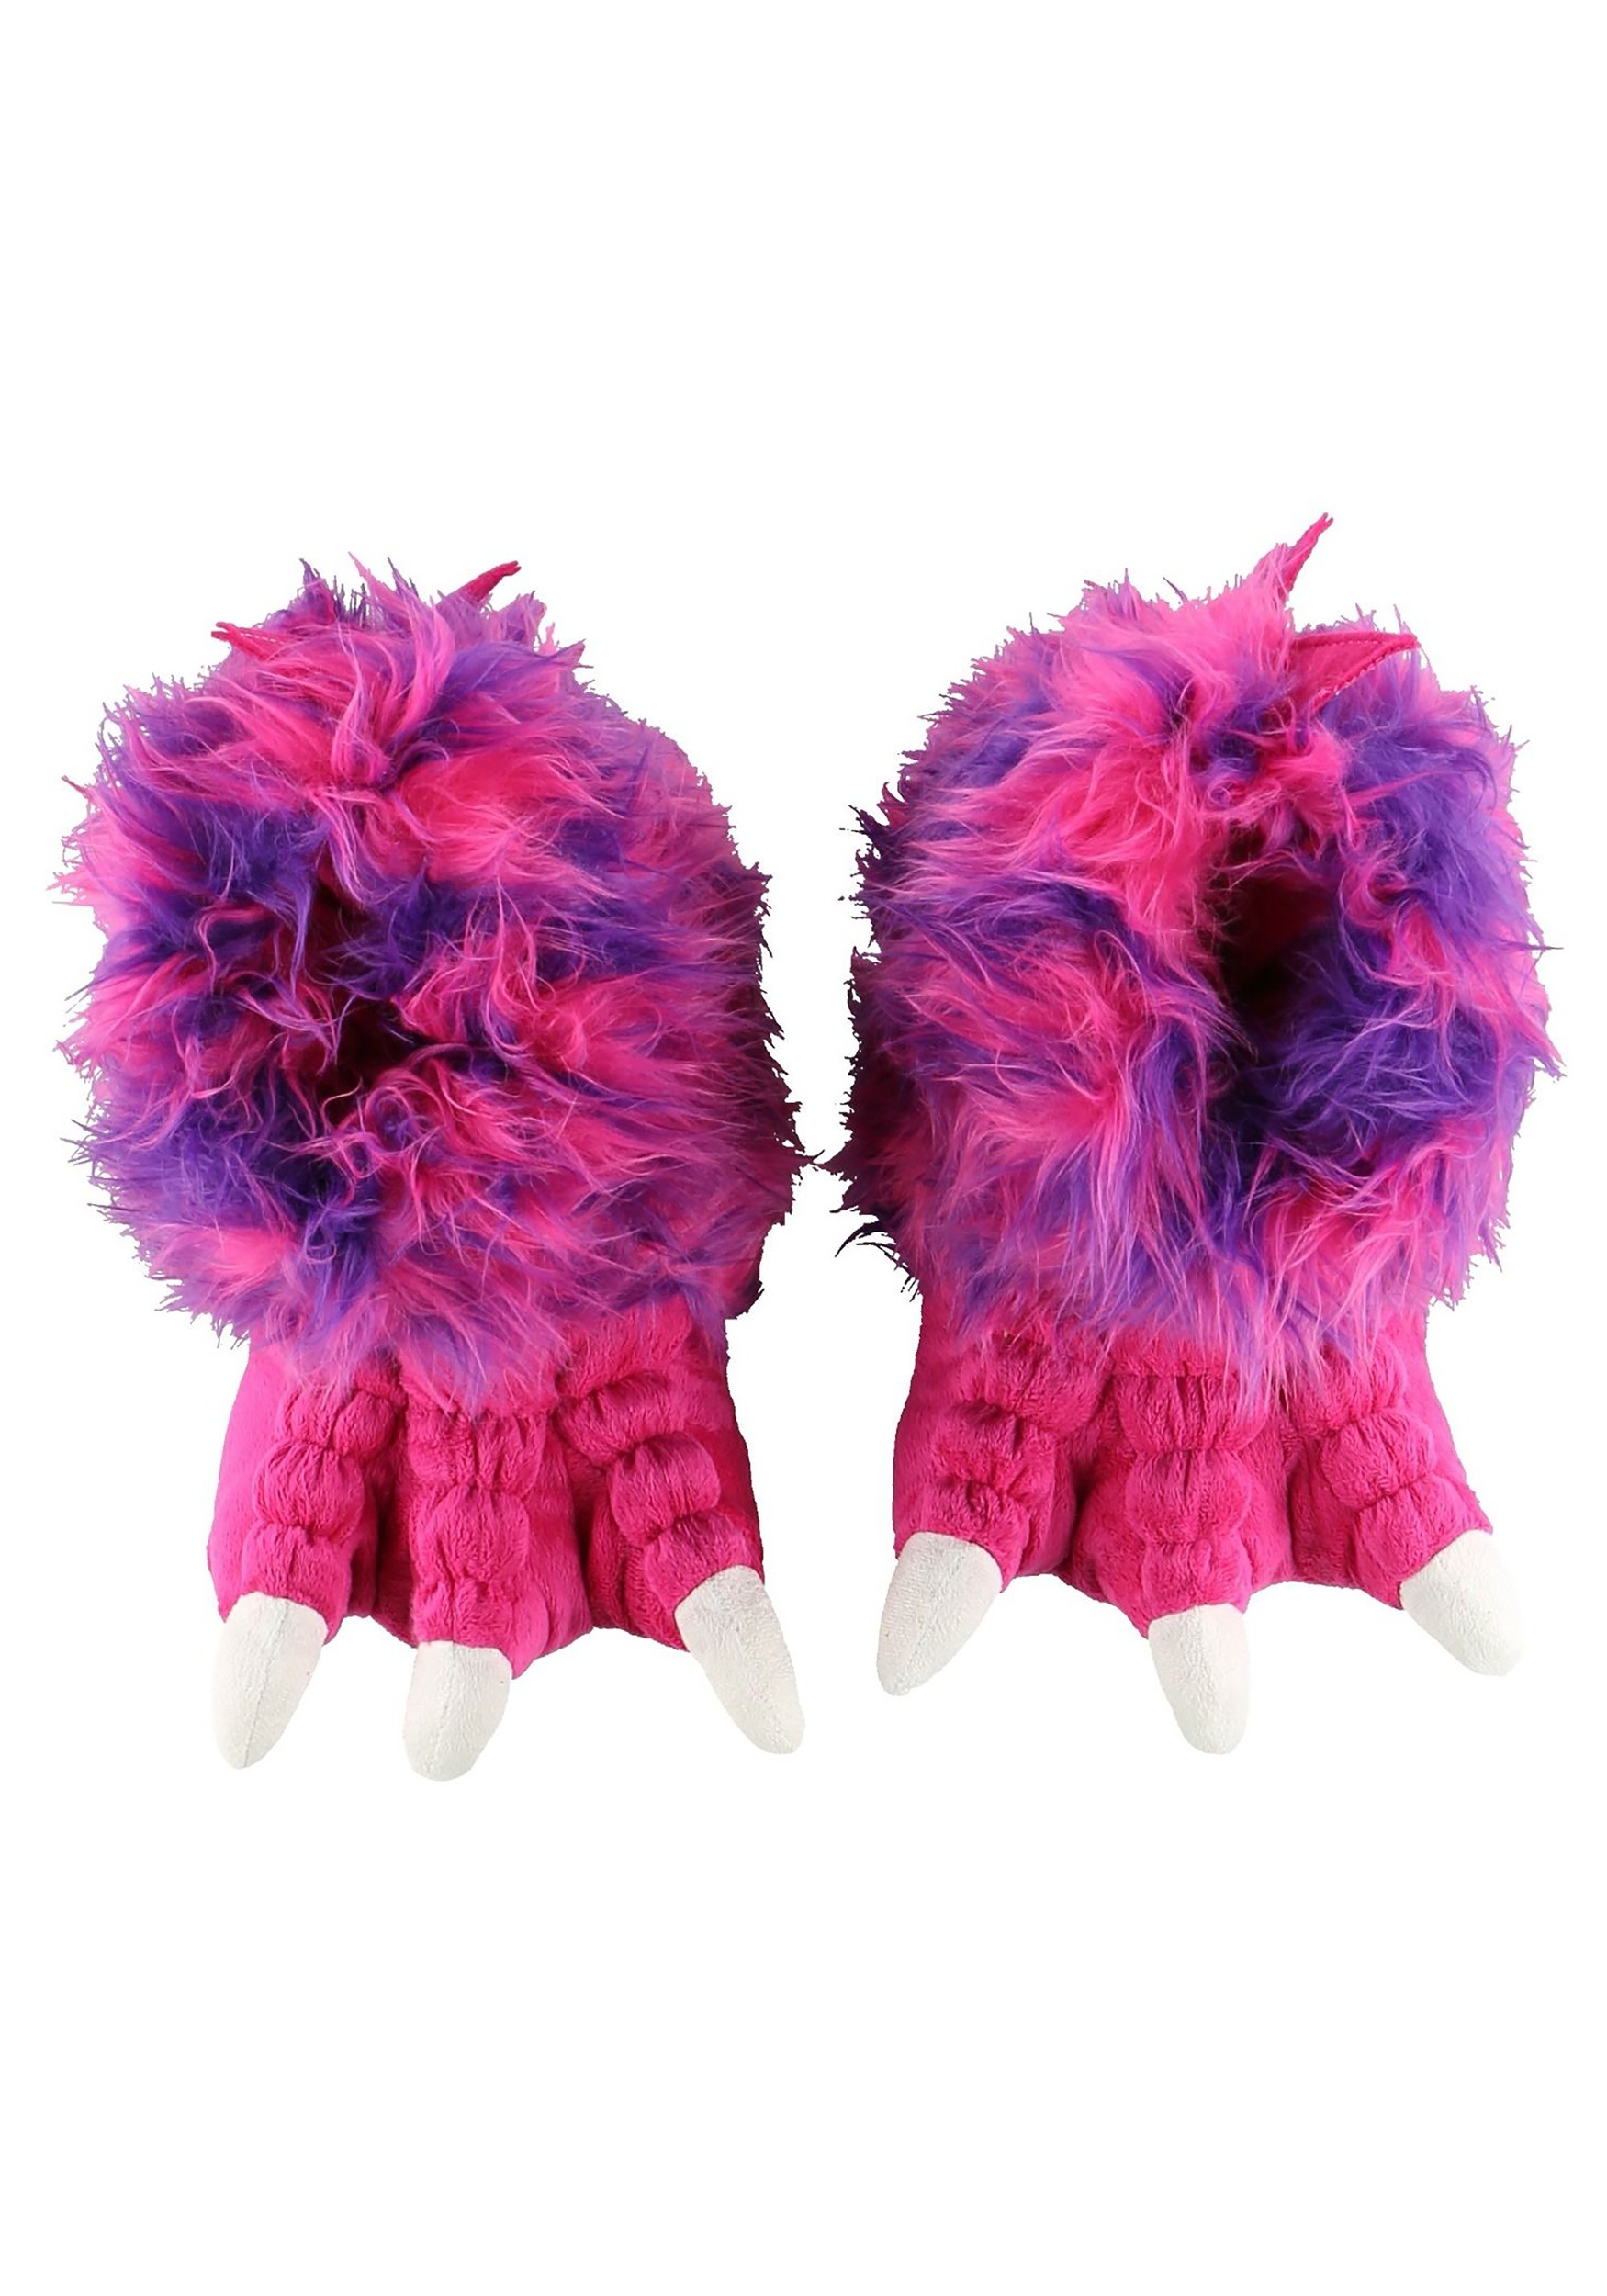 furry monster slippers